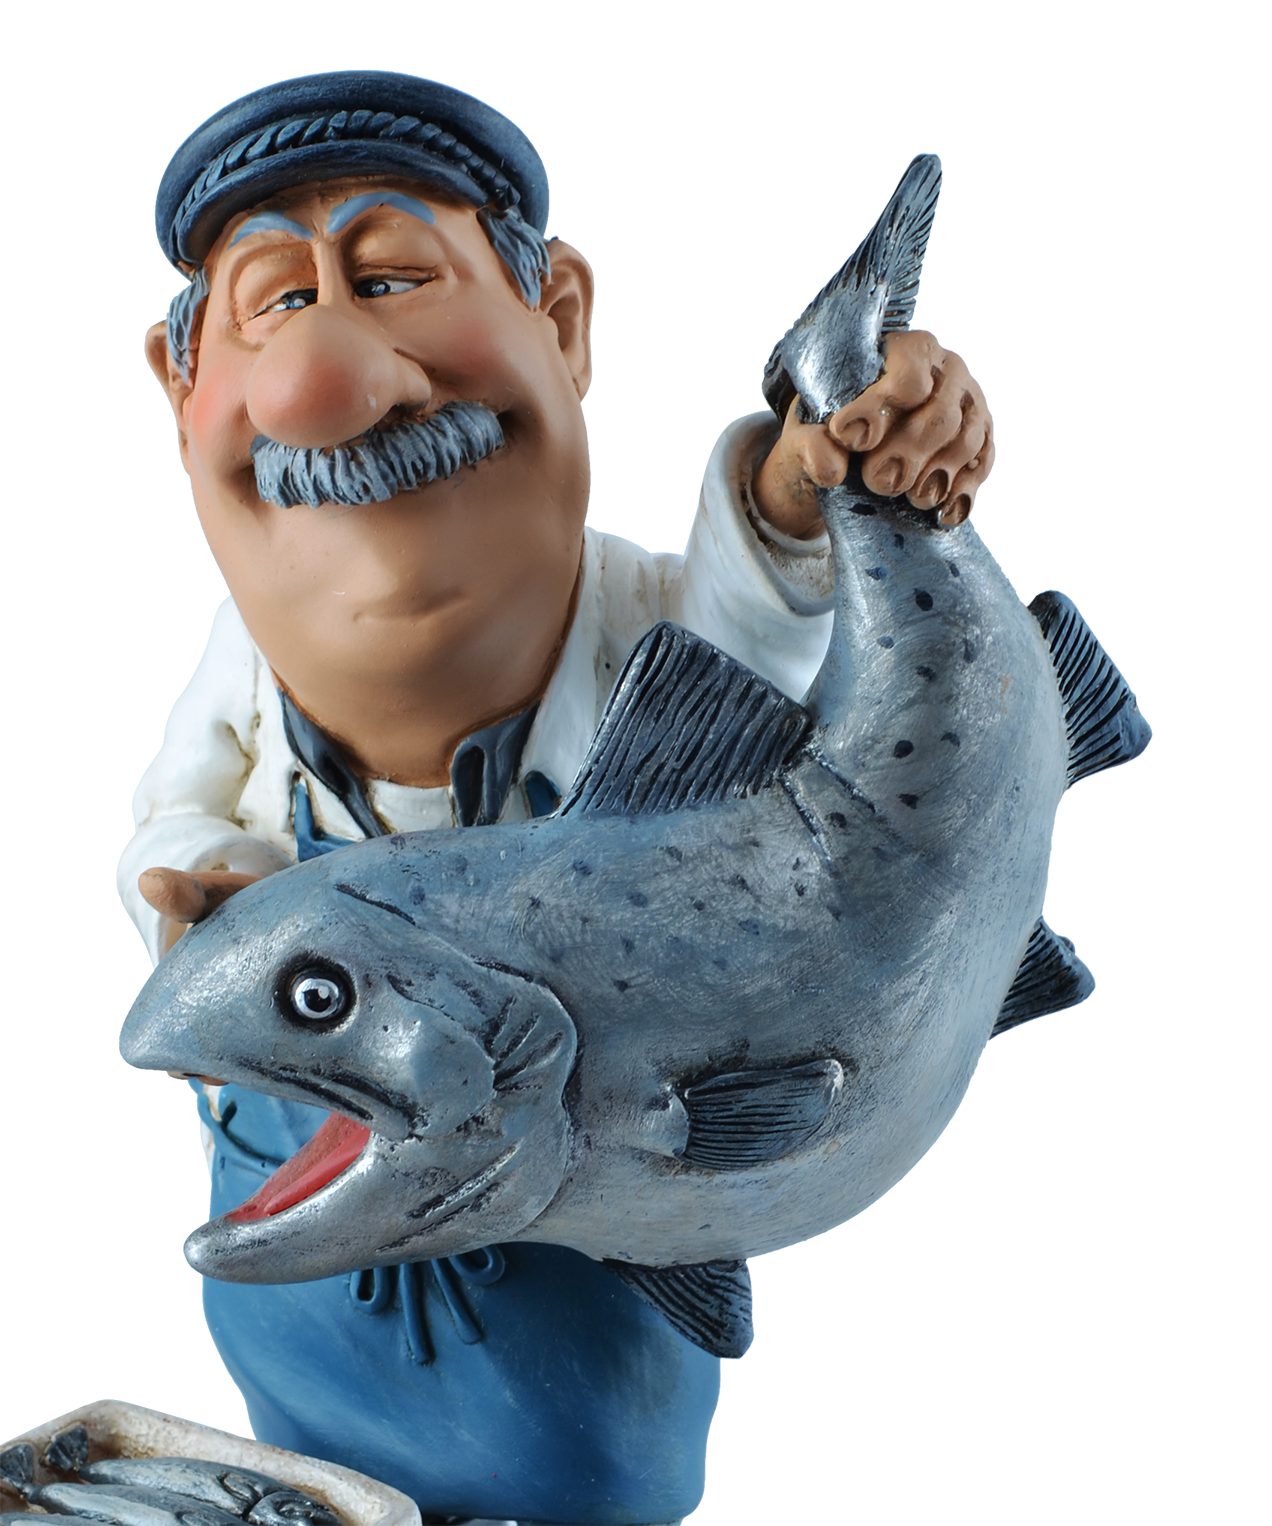 Vogler direct Gmbh Dekofigur Life, 11x8x16cm von nicht Funny Hand bemalt, hier LxBxH: "Wer Fischhändler zugreift..."